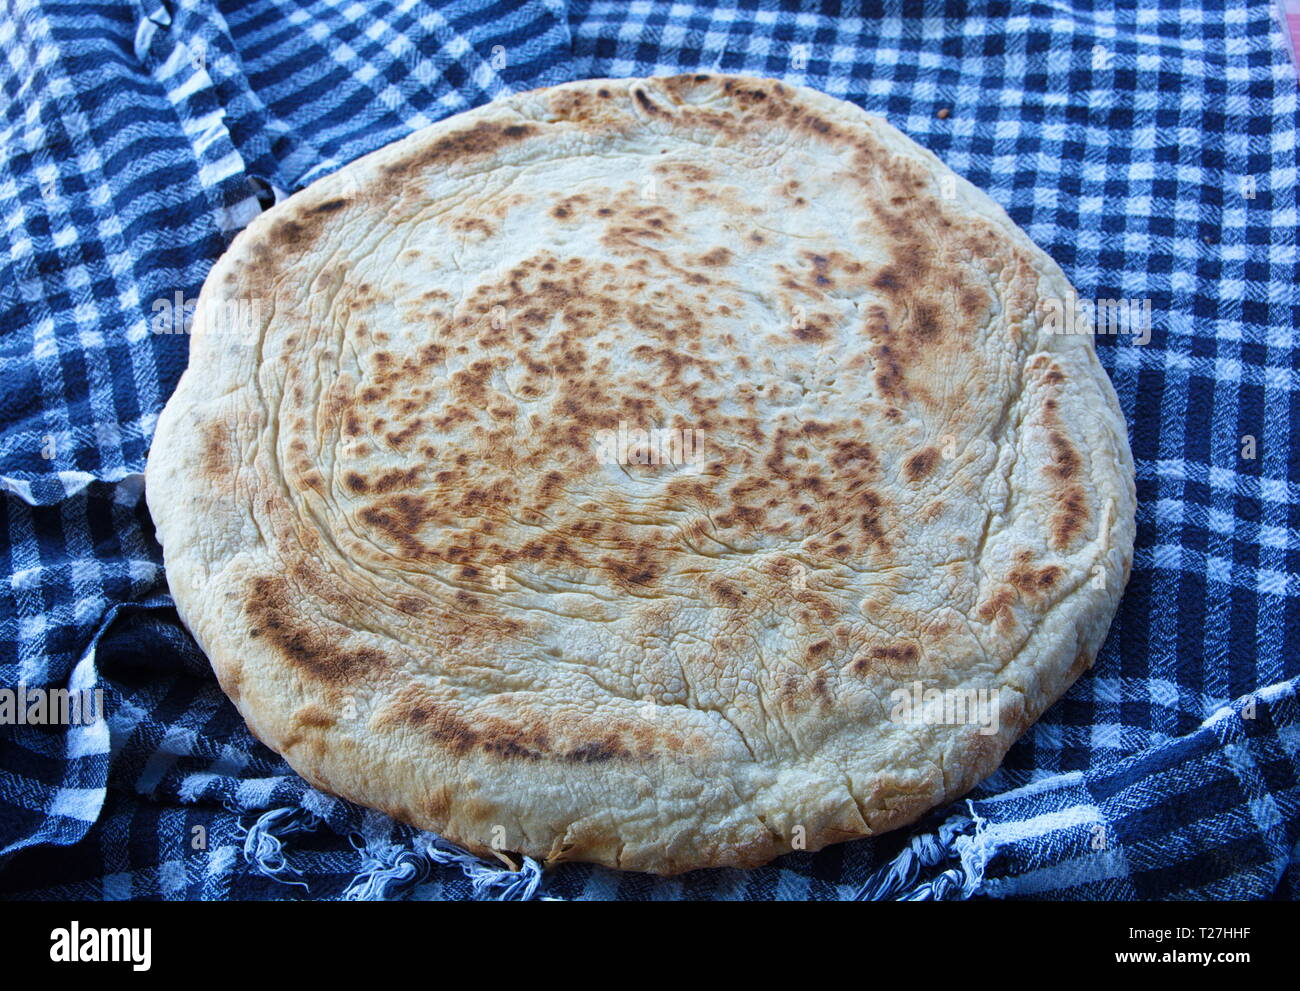 "Bazlama" Es ist eine Art von Brot aus der türkischen Küche. flach, rund und fermentierte Brot. Stockfoto